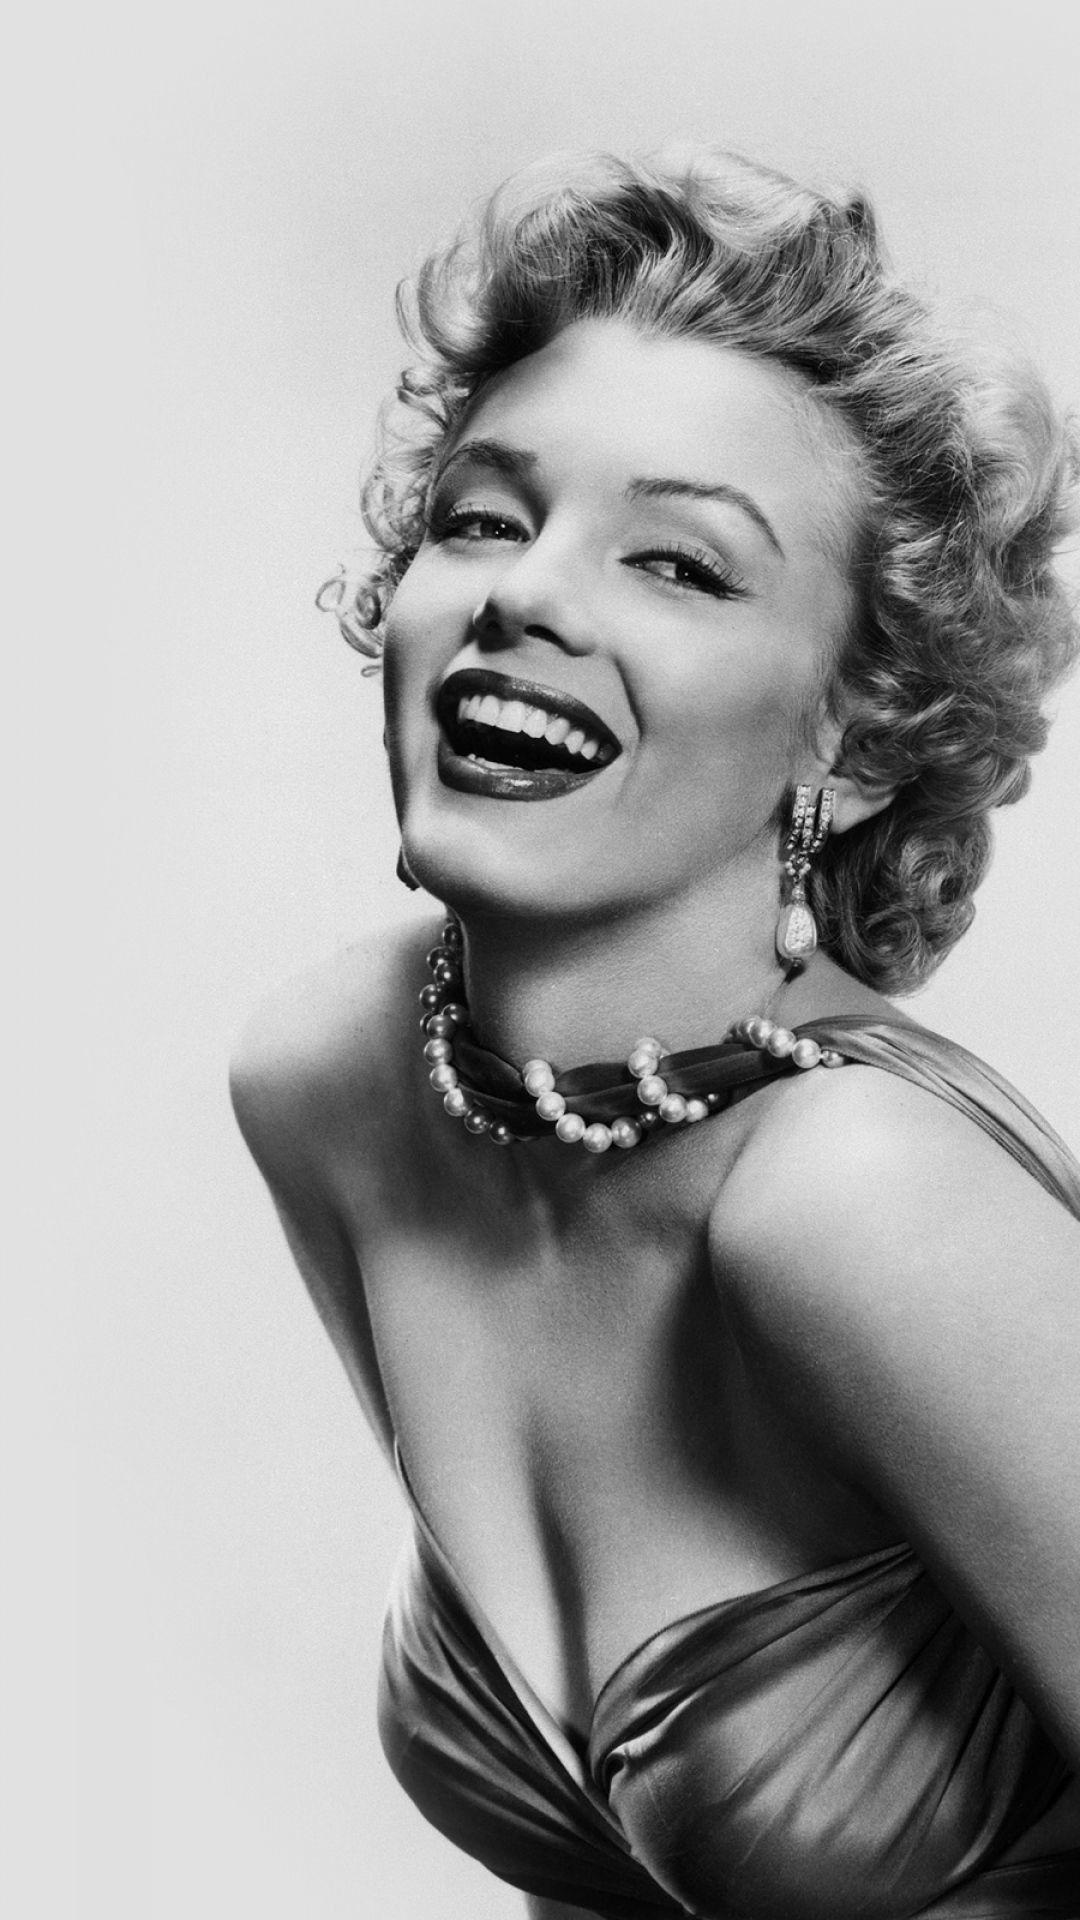 Marilyn Monroe iPhone Wallpapers - Top Free Marilyn Monroe iPhone